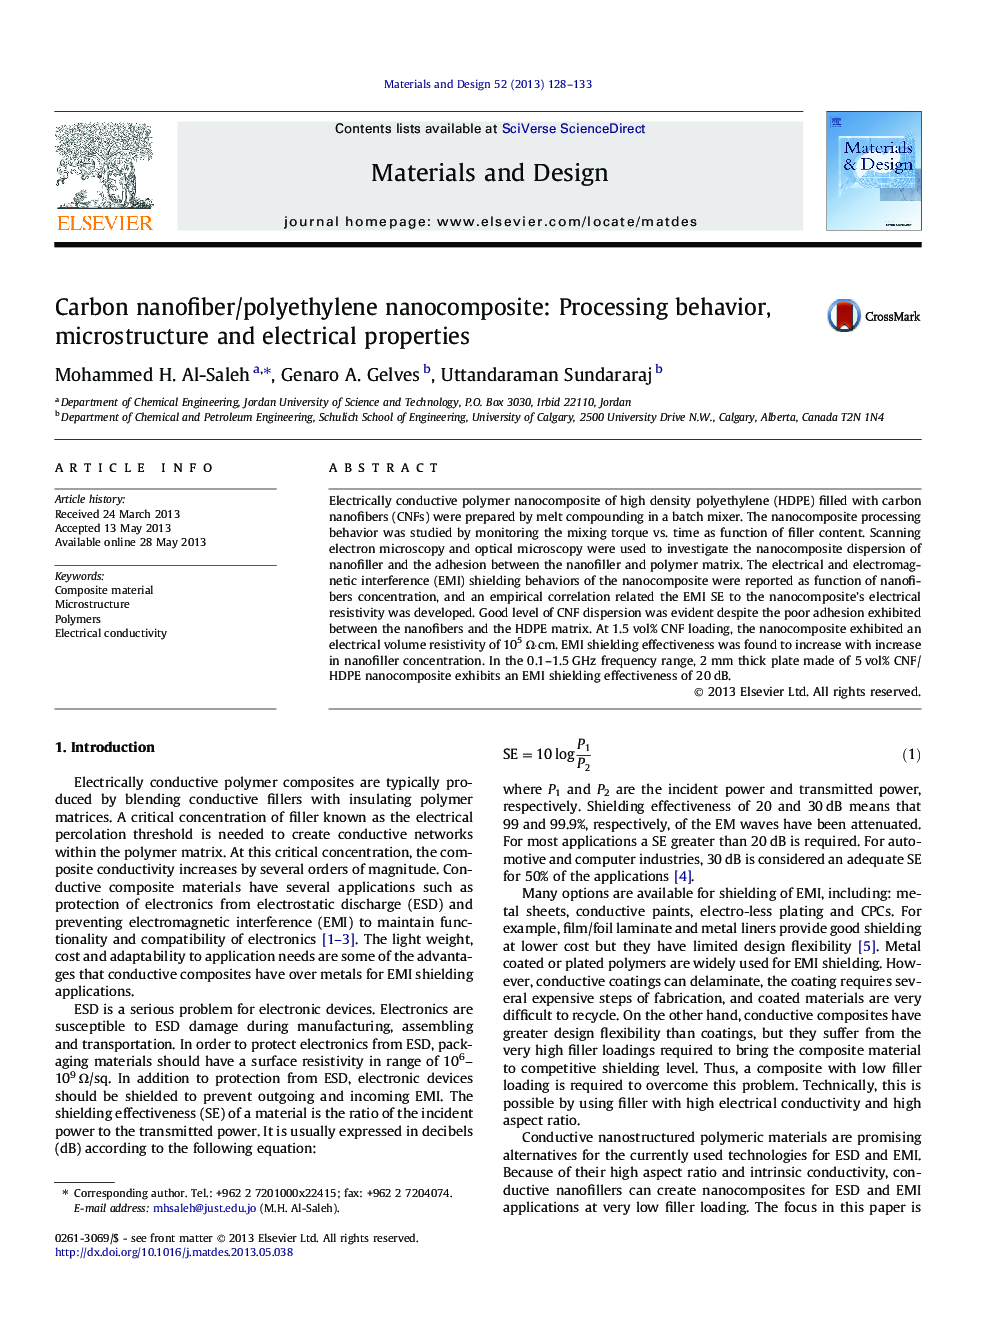 نانوکامپوزیت نانوفیبری کربن / پلی اتیلن: رفتار پردازش، ریزساختار و خواص الکتریکی 